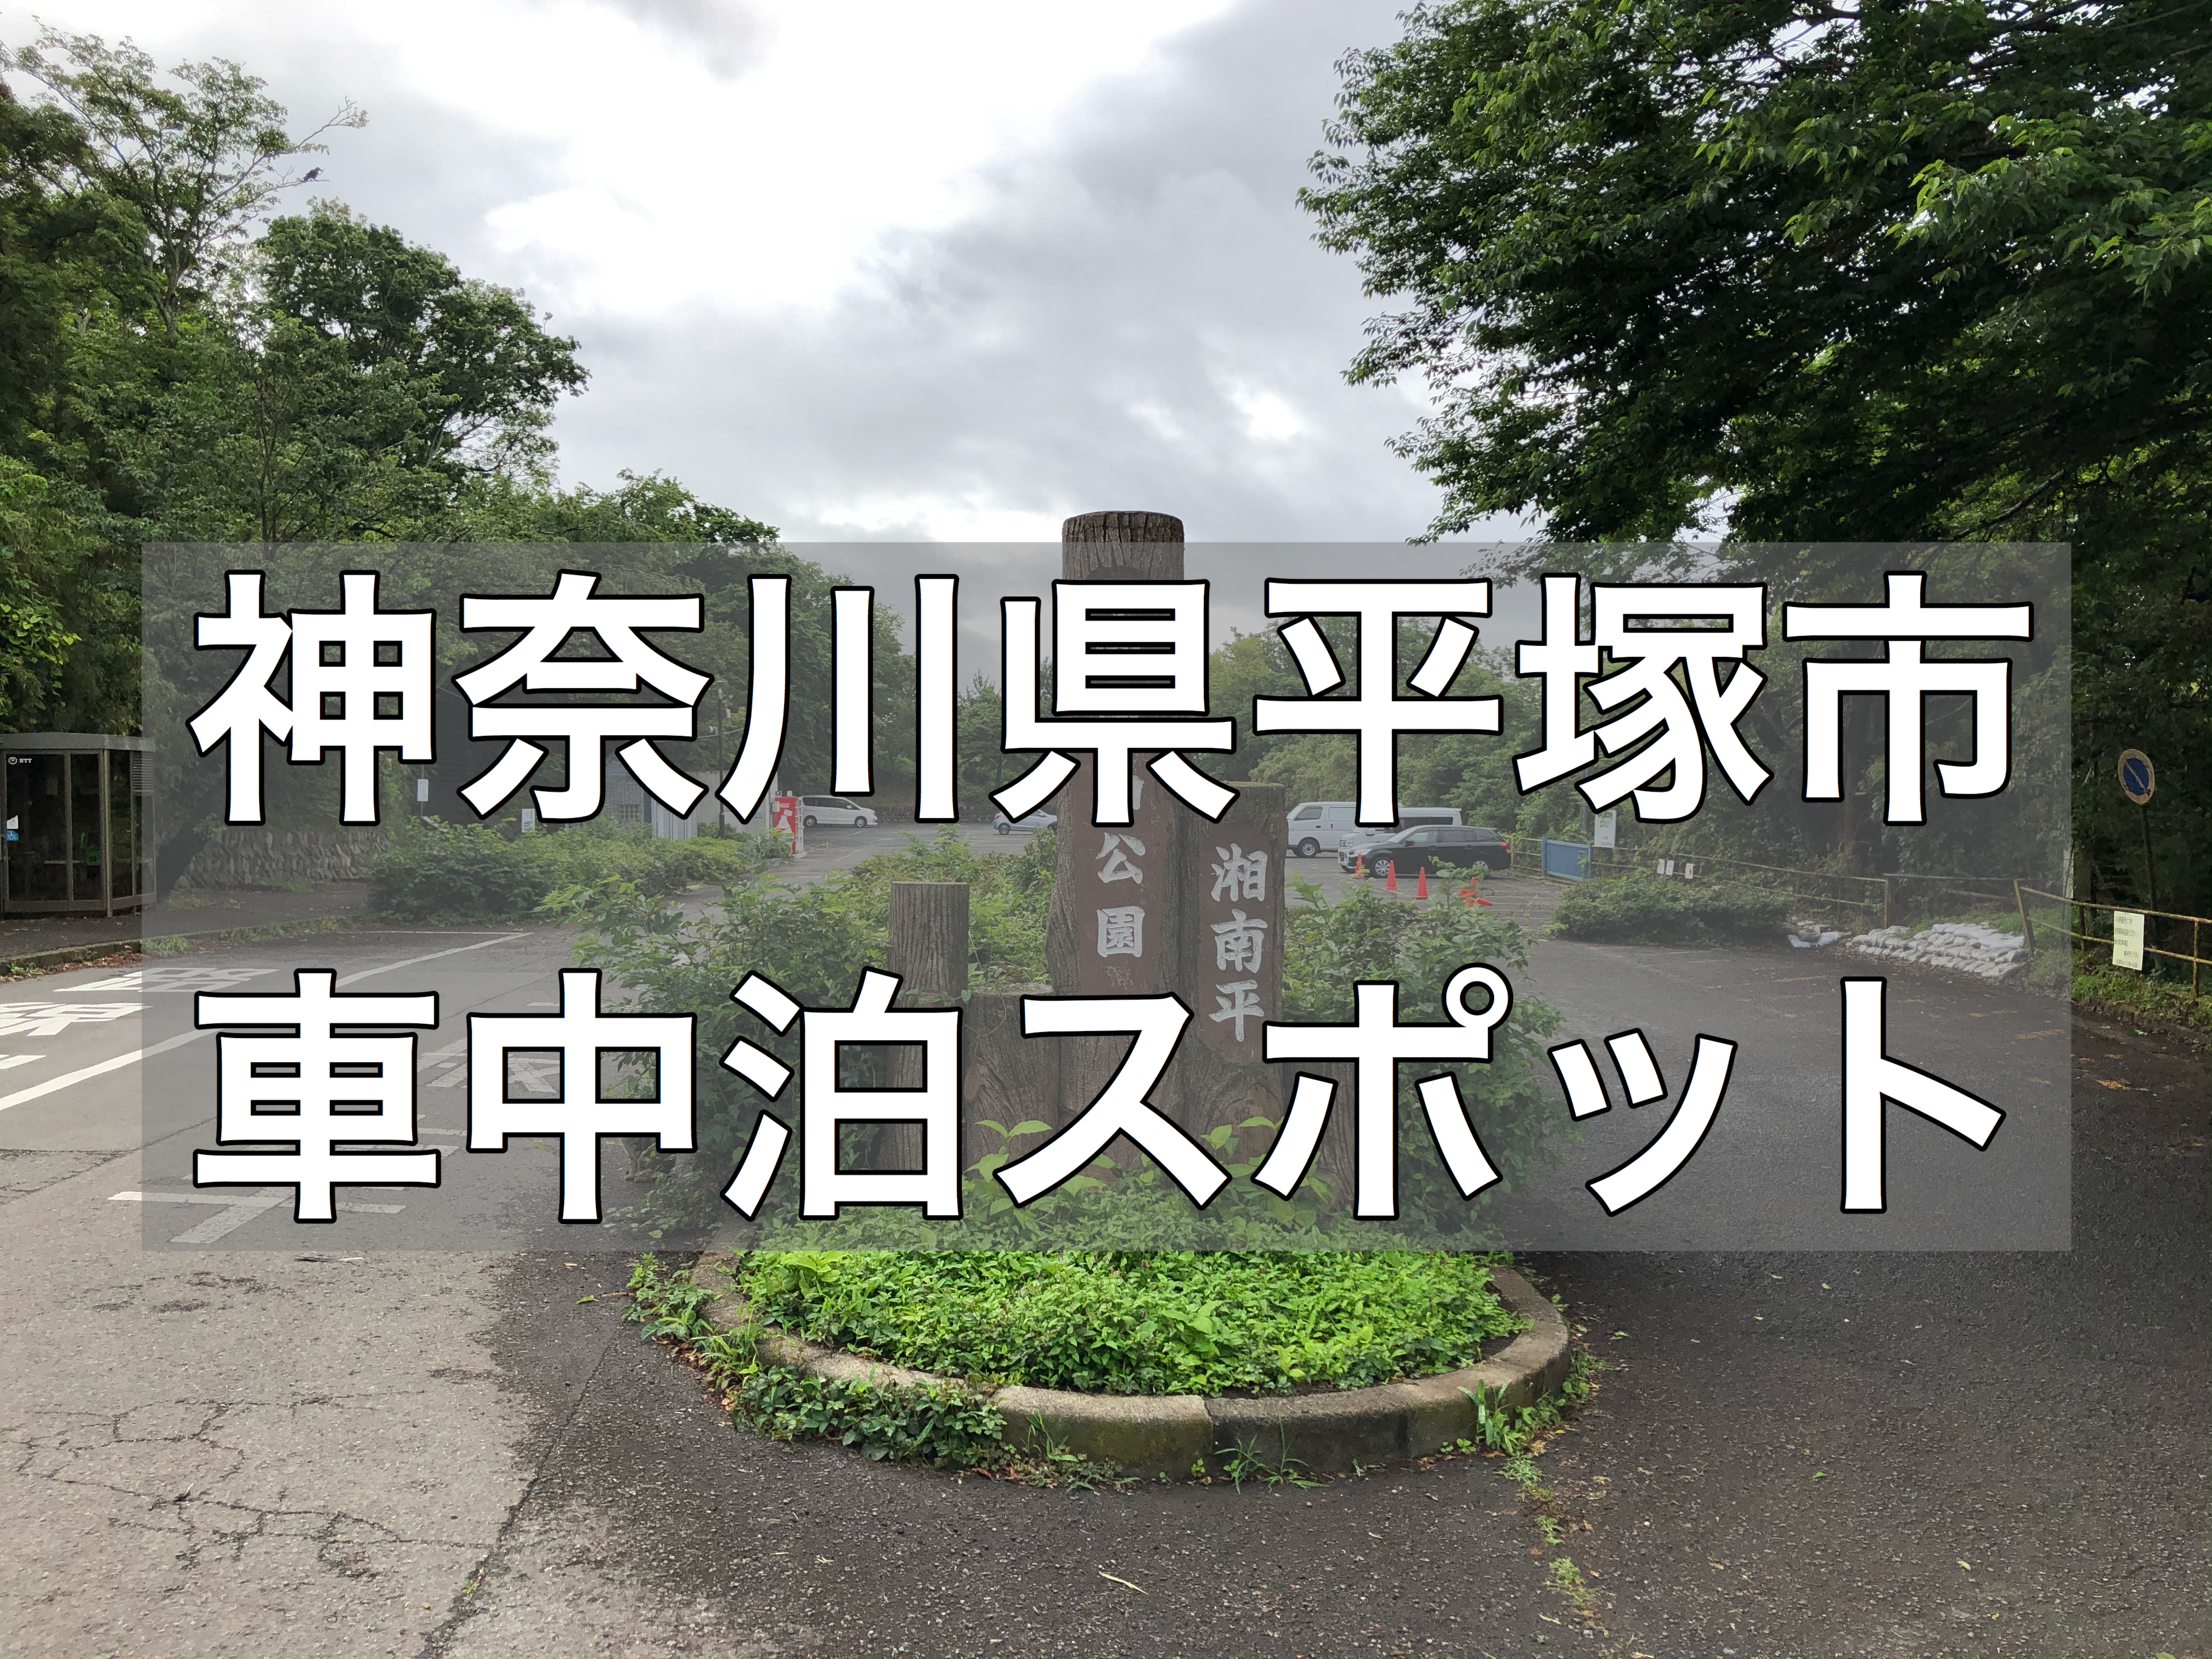 車中泊スポット 高麗山公園の駐車場で車中泊可能 おすすめはしません 神奈川県平塚市